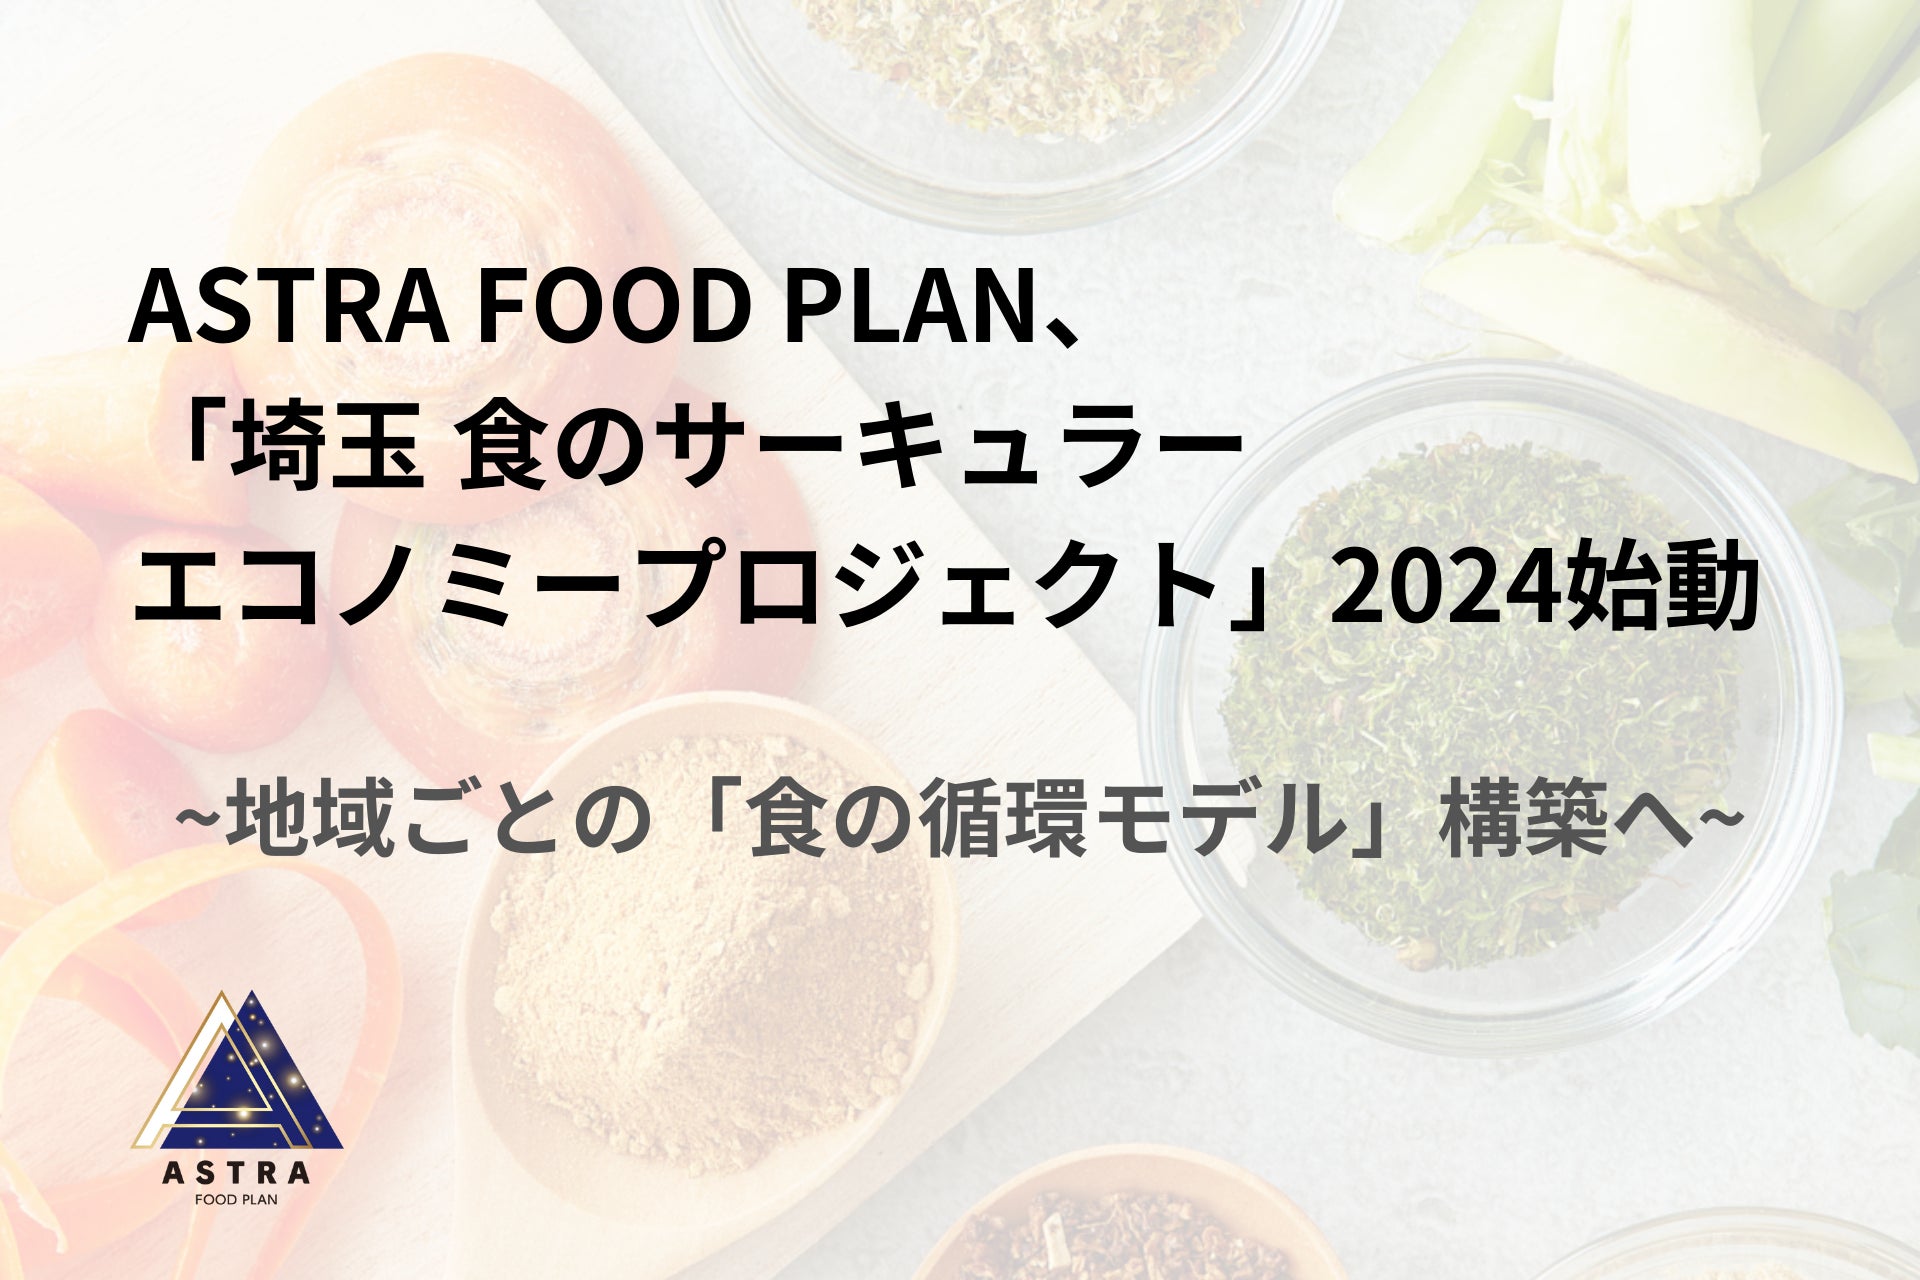 ASTRA FOOD PLAN、「埼玉 食のサーキュラーエコノミープロジェクト2024」を始動。深谷市、久喜市、富士見市と連携。